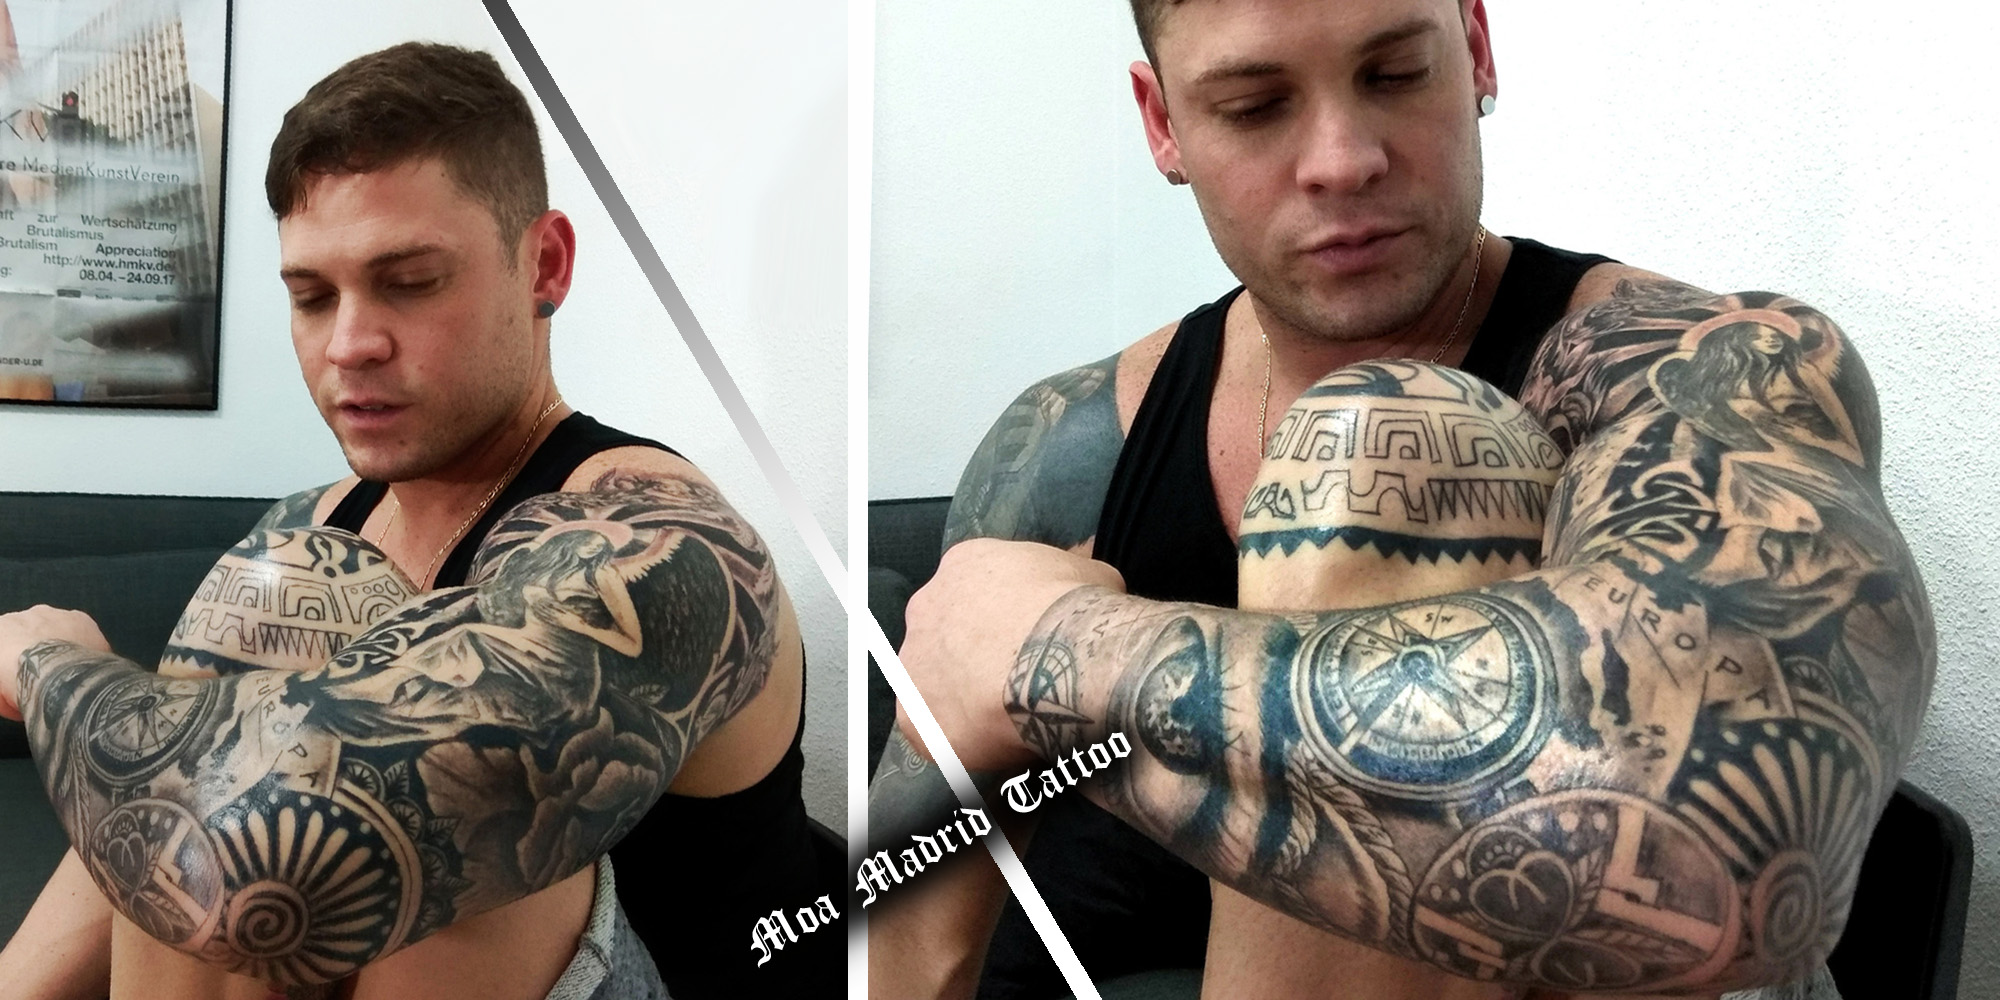 Tatuaje maorí en rodilla en progreso y tatuaje de brazo entero en realismo terminado